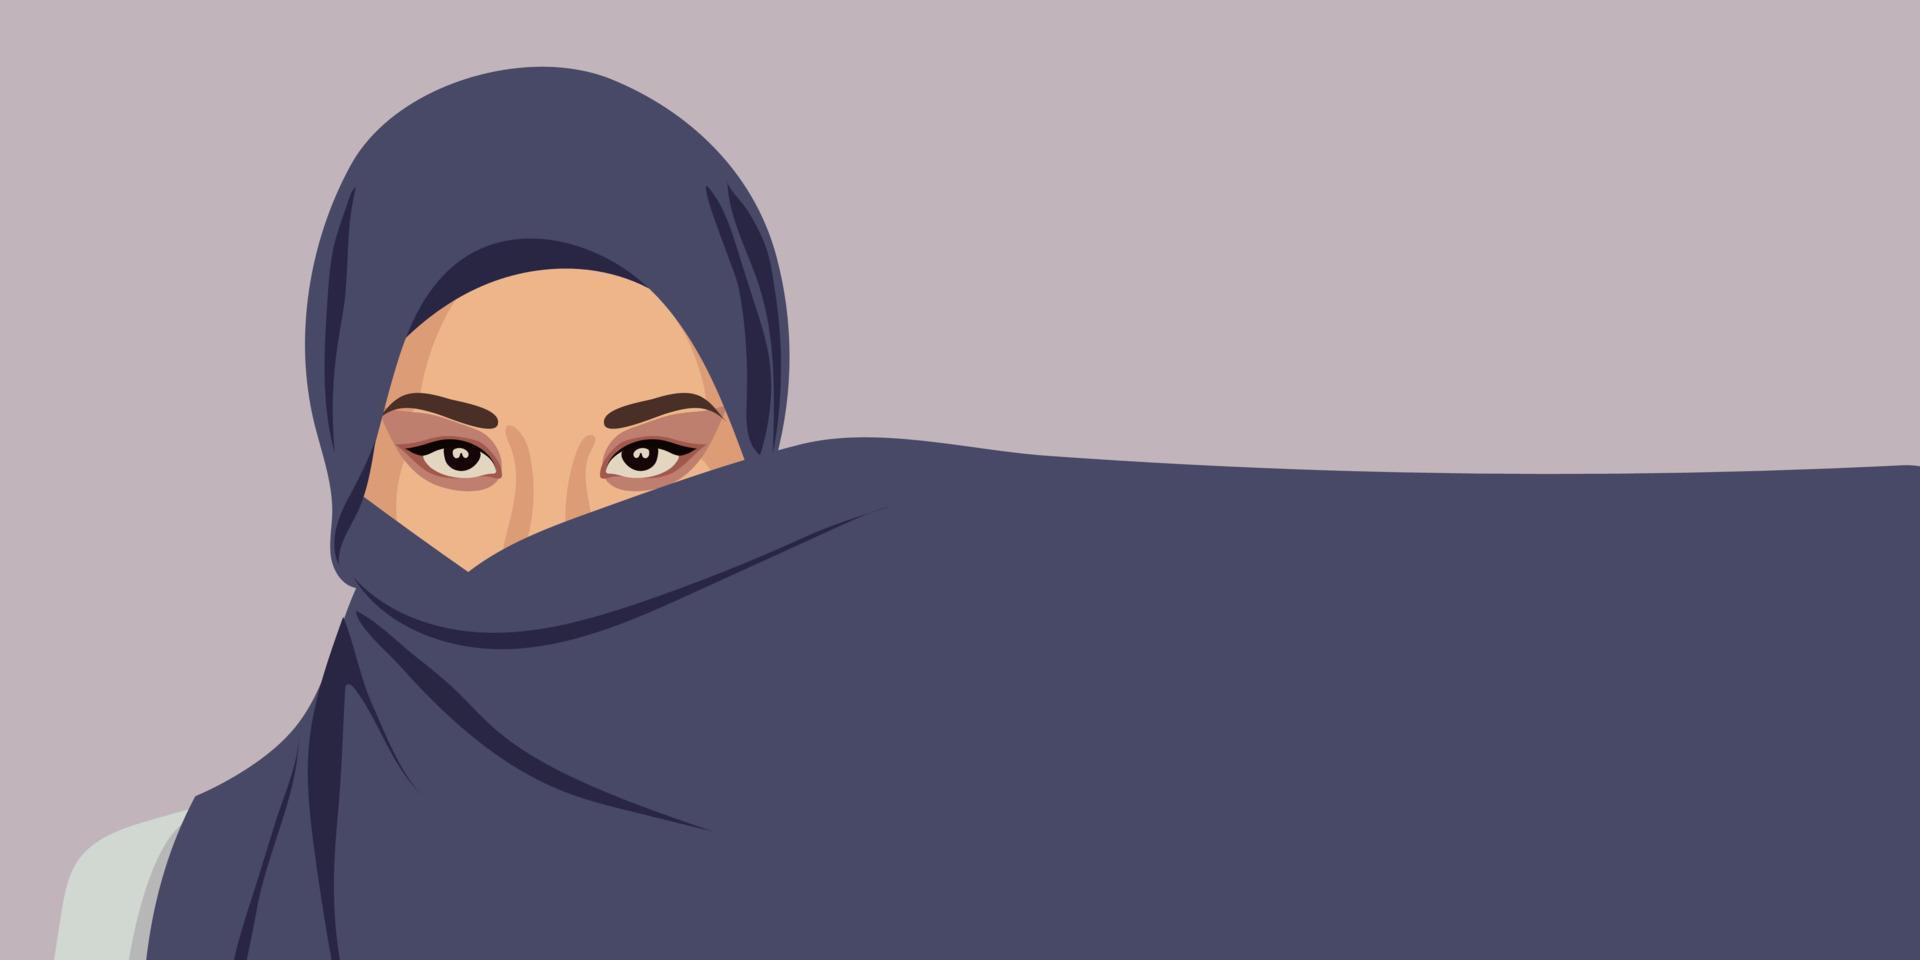 monde hijab journée. musulman femme dans hijab. arabe, musulman, islamique femme. février, juillet. hijab journée. vecteur illustration de une fille dans une foulard. bannière